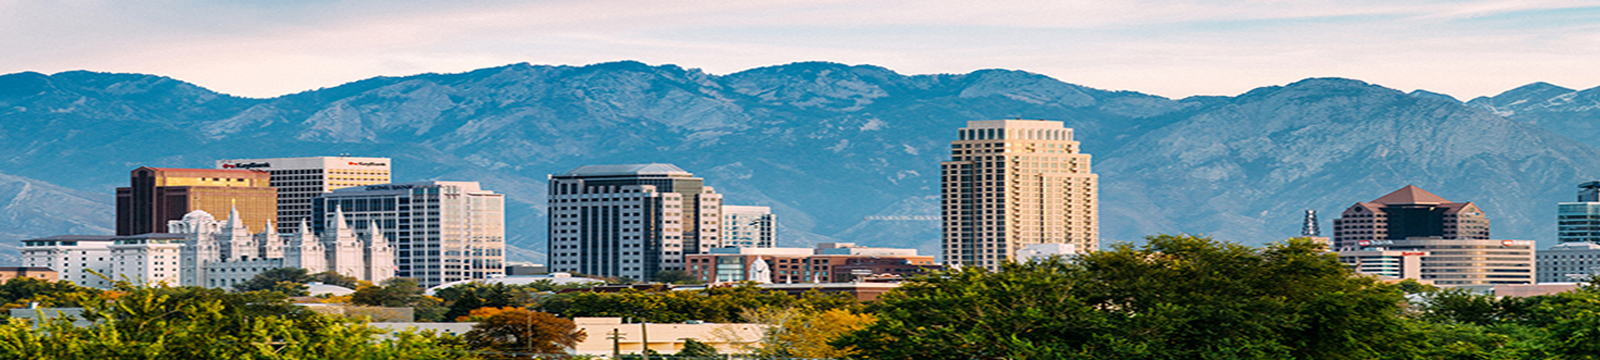 Panorama of downtown Salt Lake City, Utah